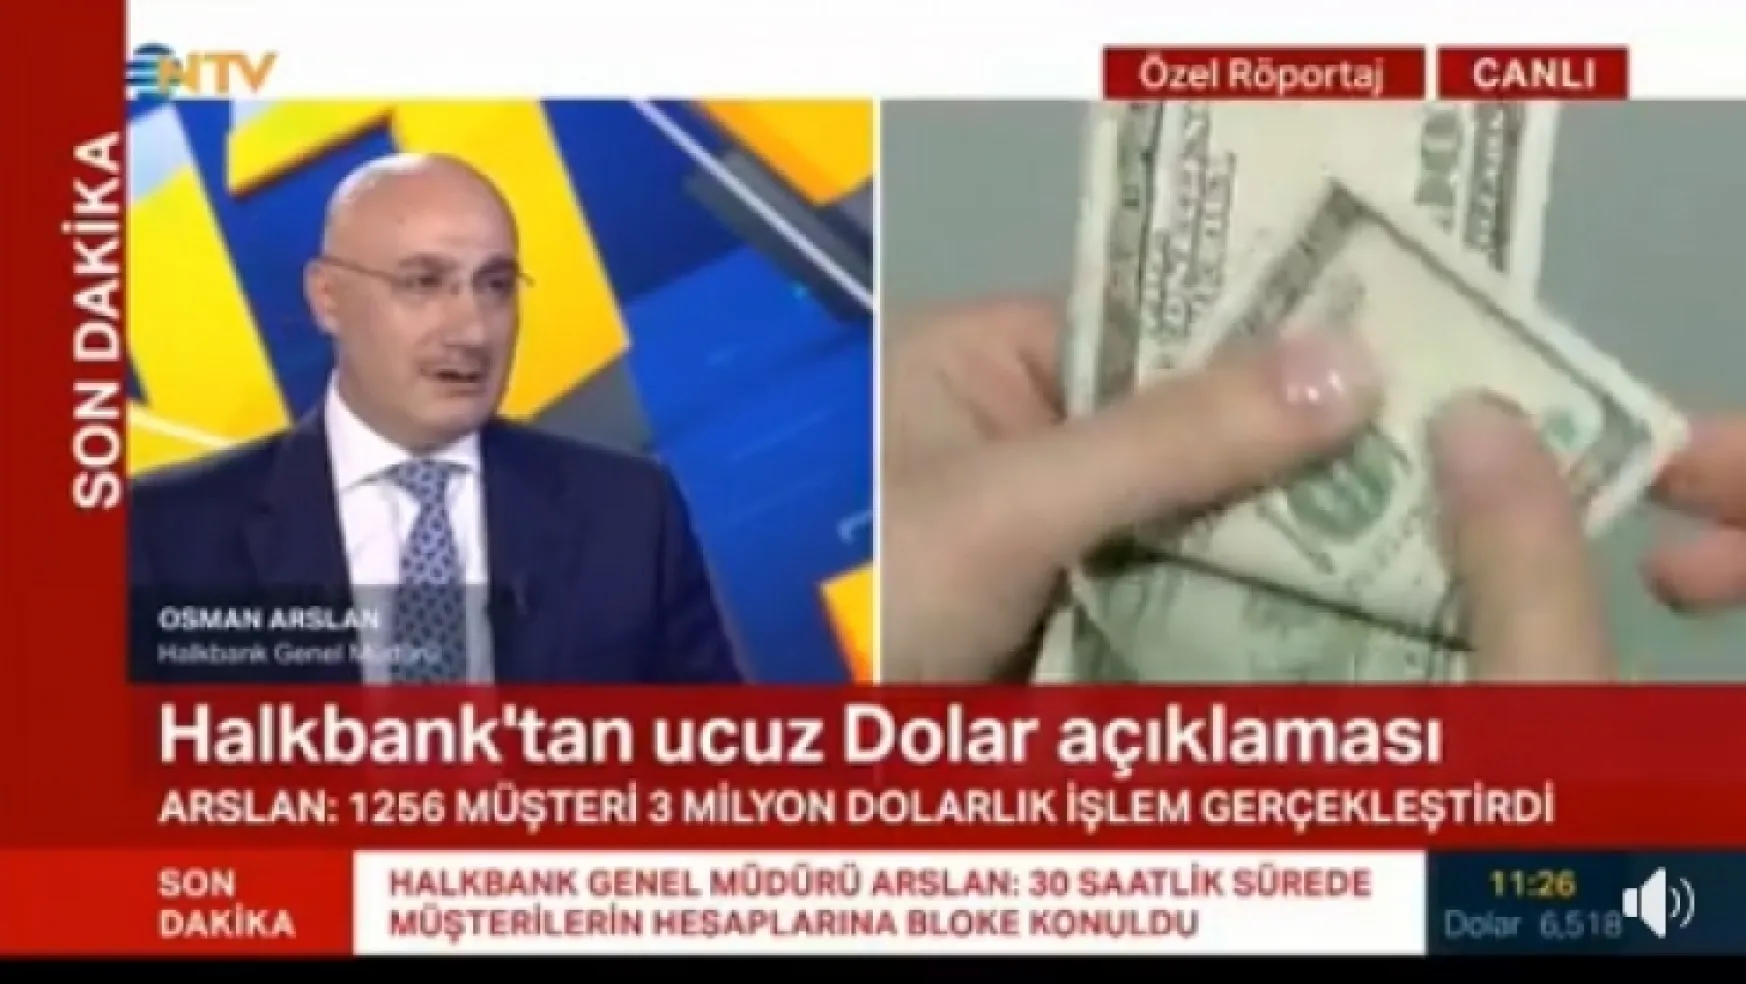 Halkbank Genel Müdürü Arslan: 1763 müşteri 4,6 milyon dolarlık işlem gerçekleştirdi (Hepsi iptal edildi) Dedi